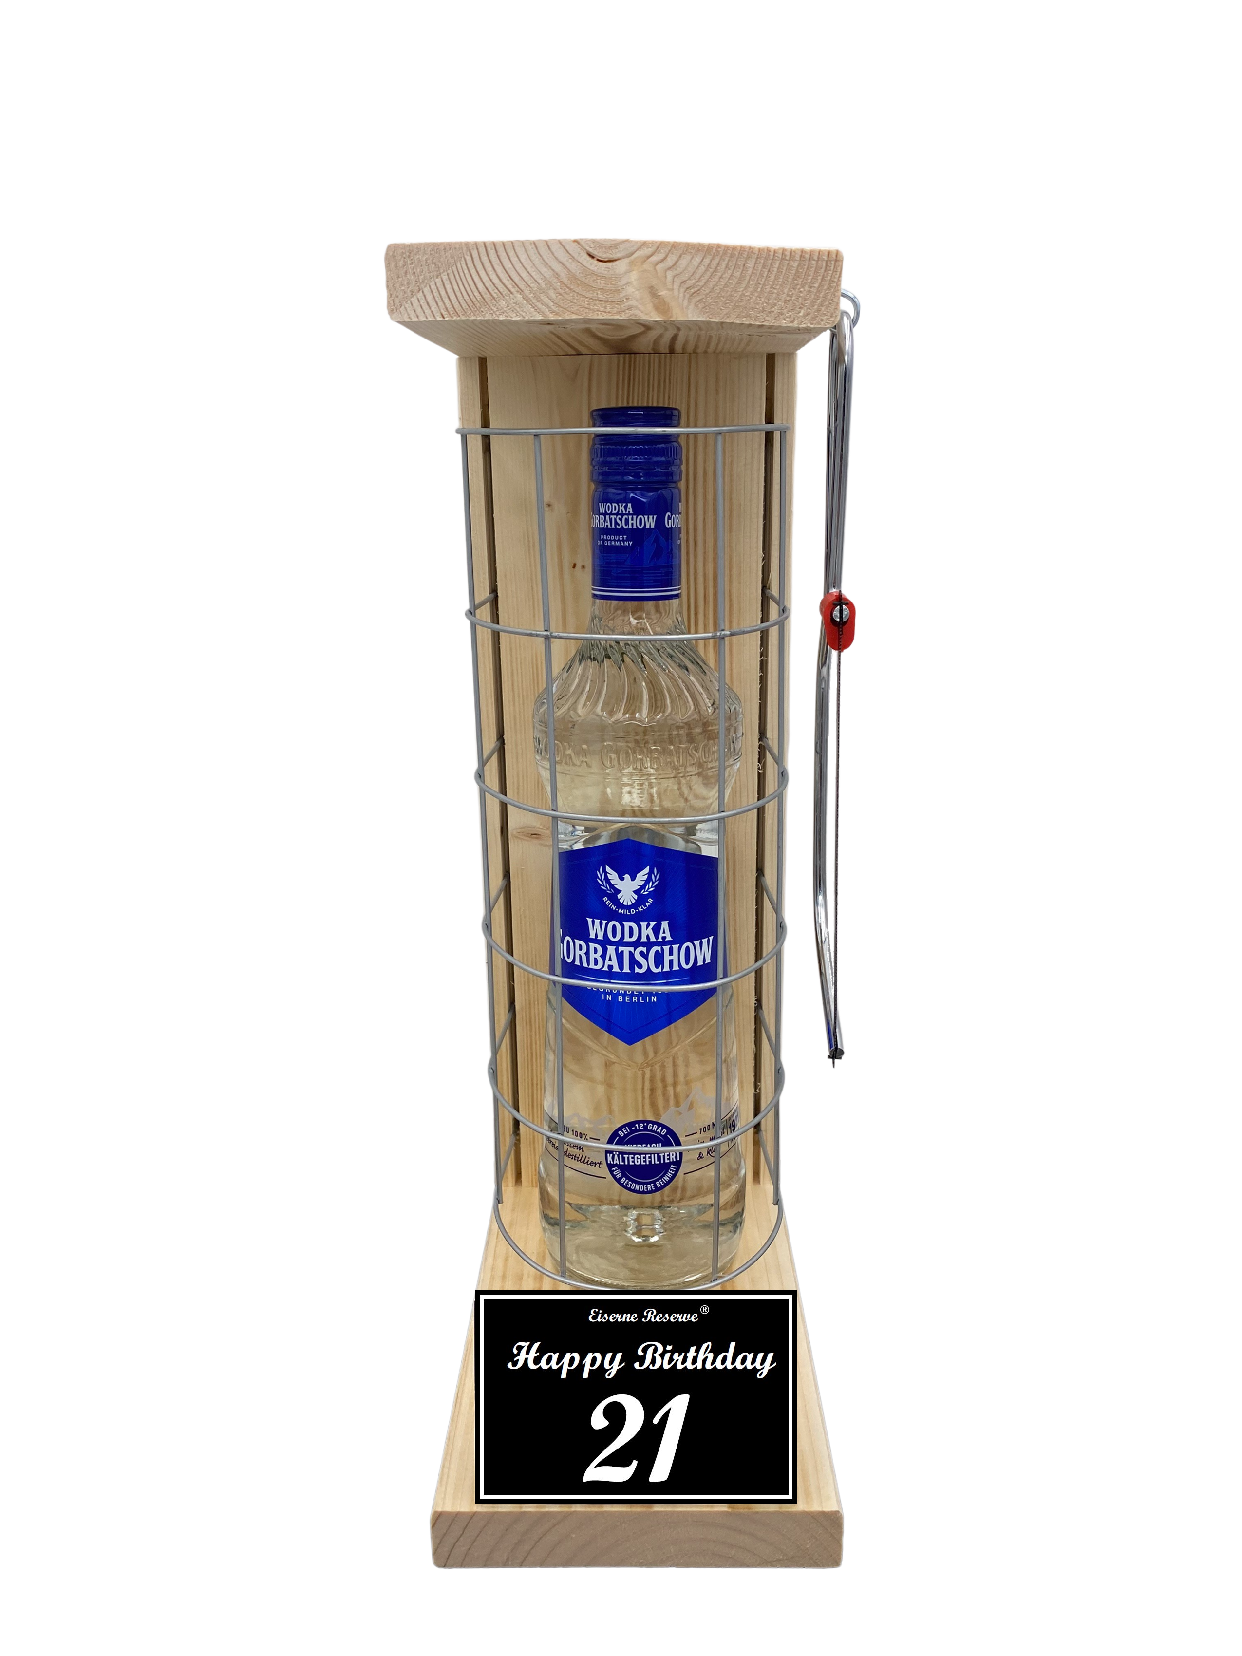 Wodka Geschenk zum 21 Geburtstag - Eiserne Reserve Gitterkäfig